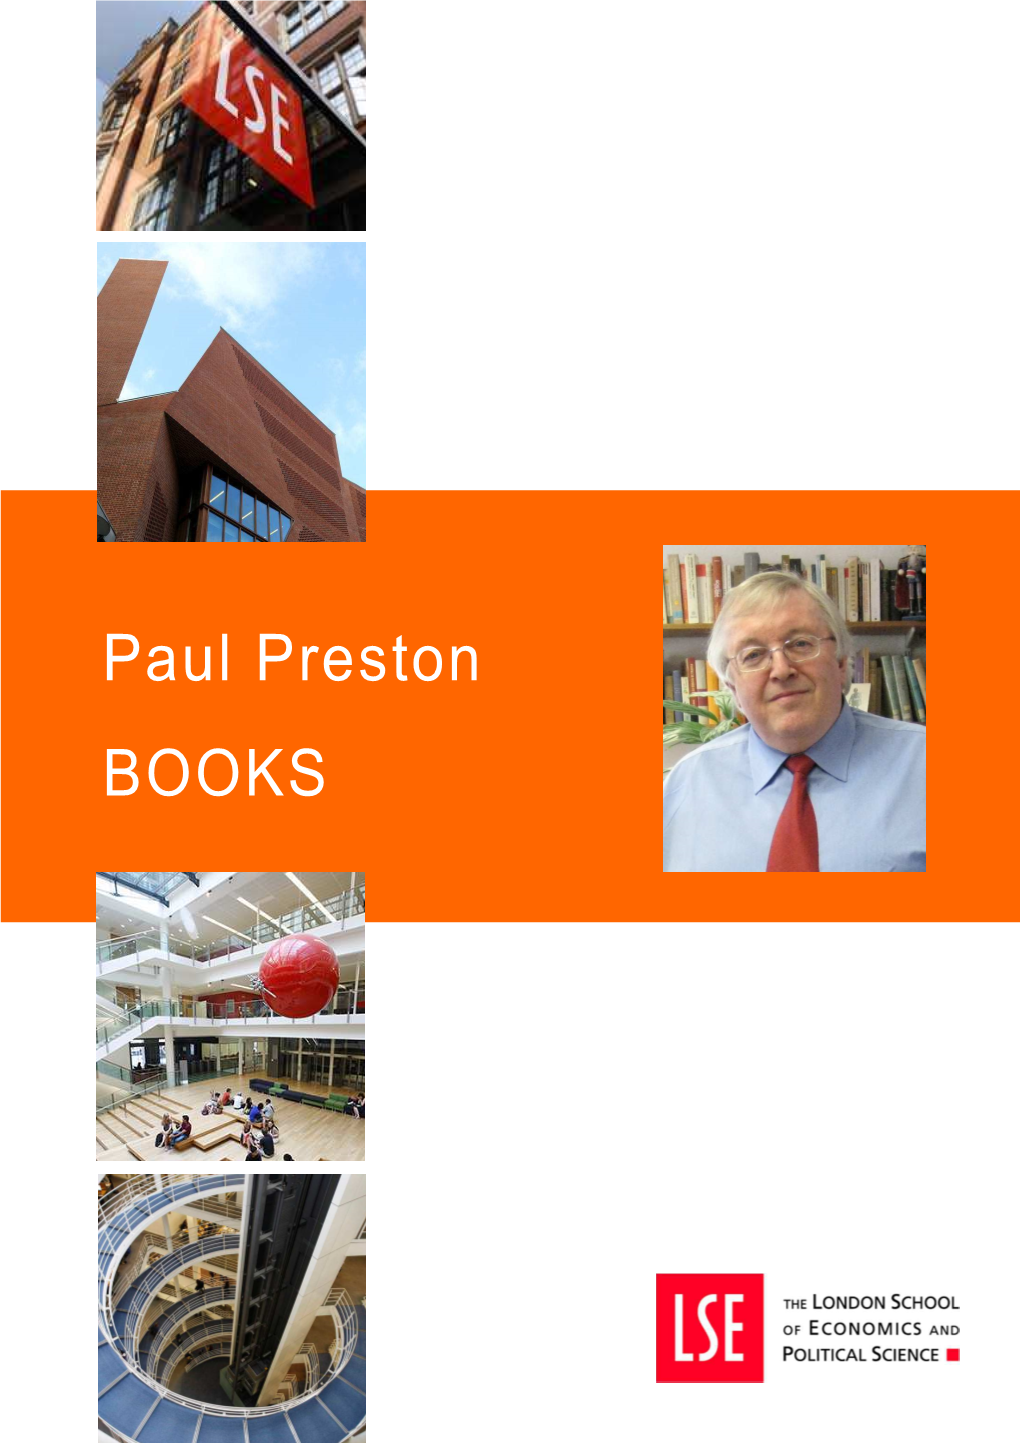 Paul Preston BOOKS